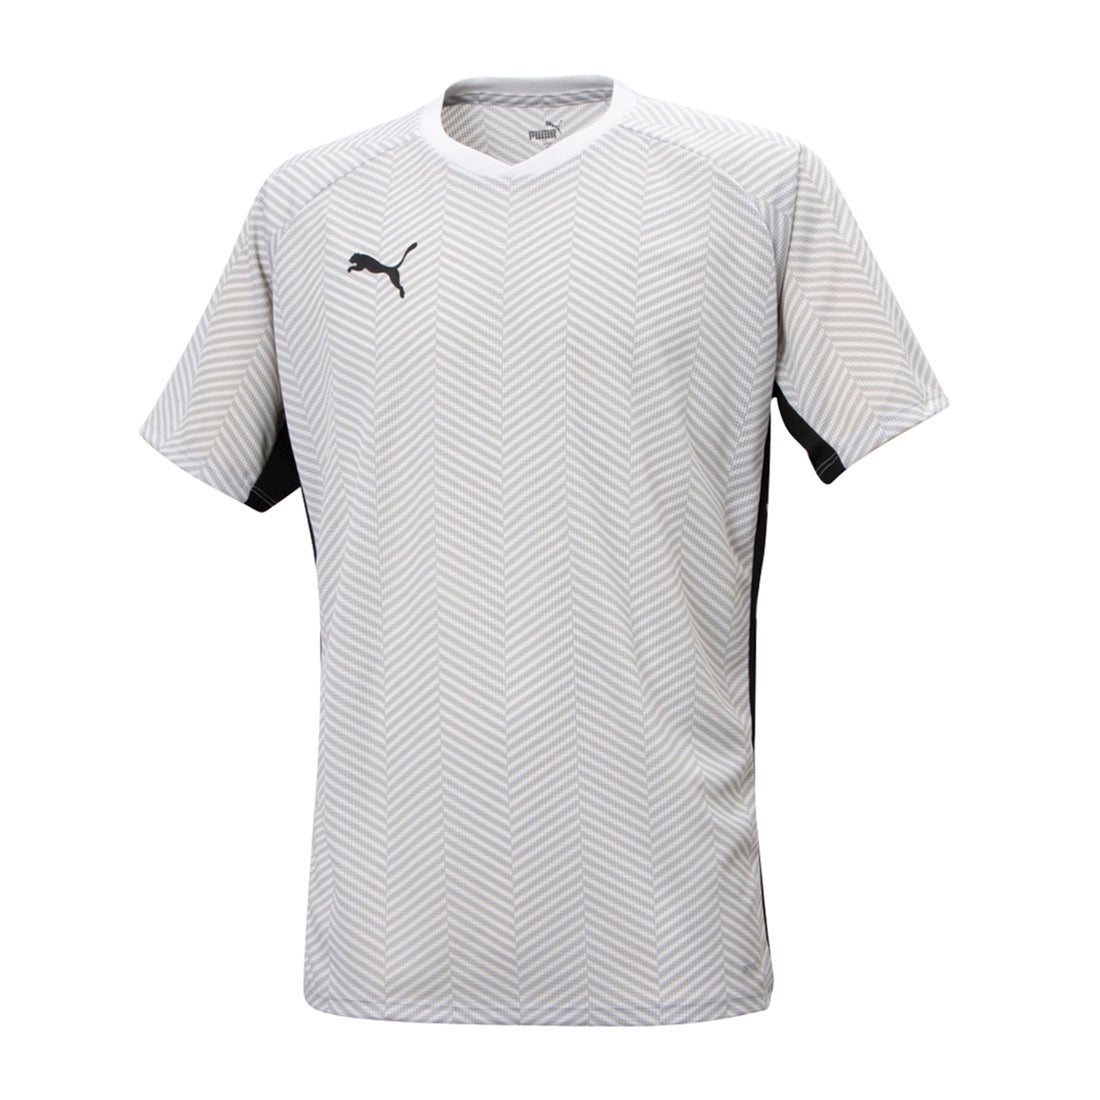 プーマ サッカーウェア プラクティスシャツ 半袖 メンズ FUSSBAL HYBRID AOP 半袖Tシャツ 658015-03 PUMA